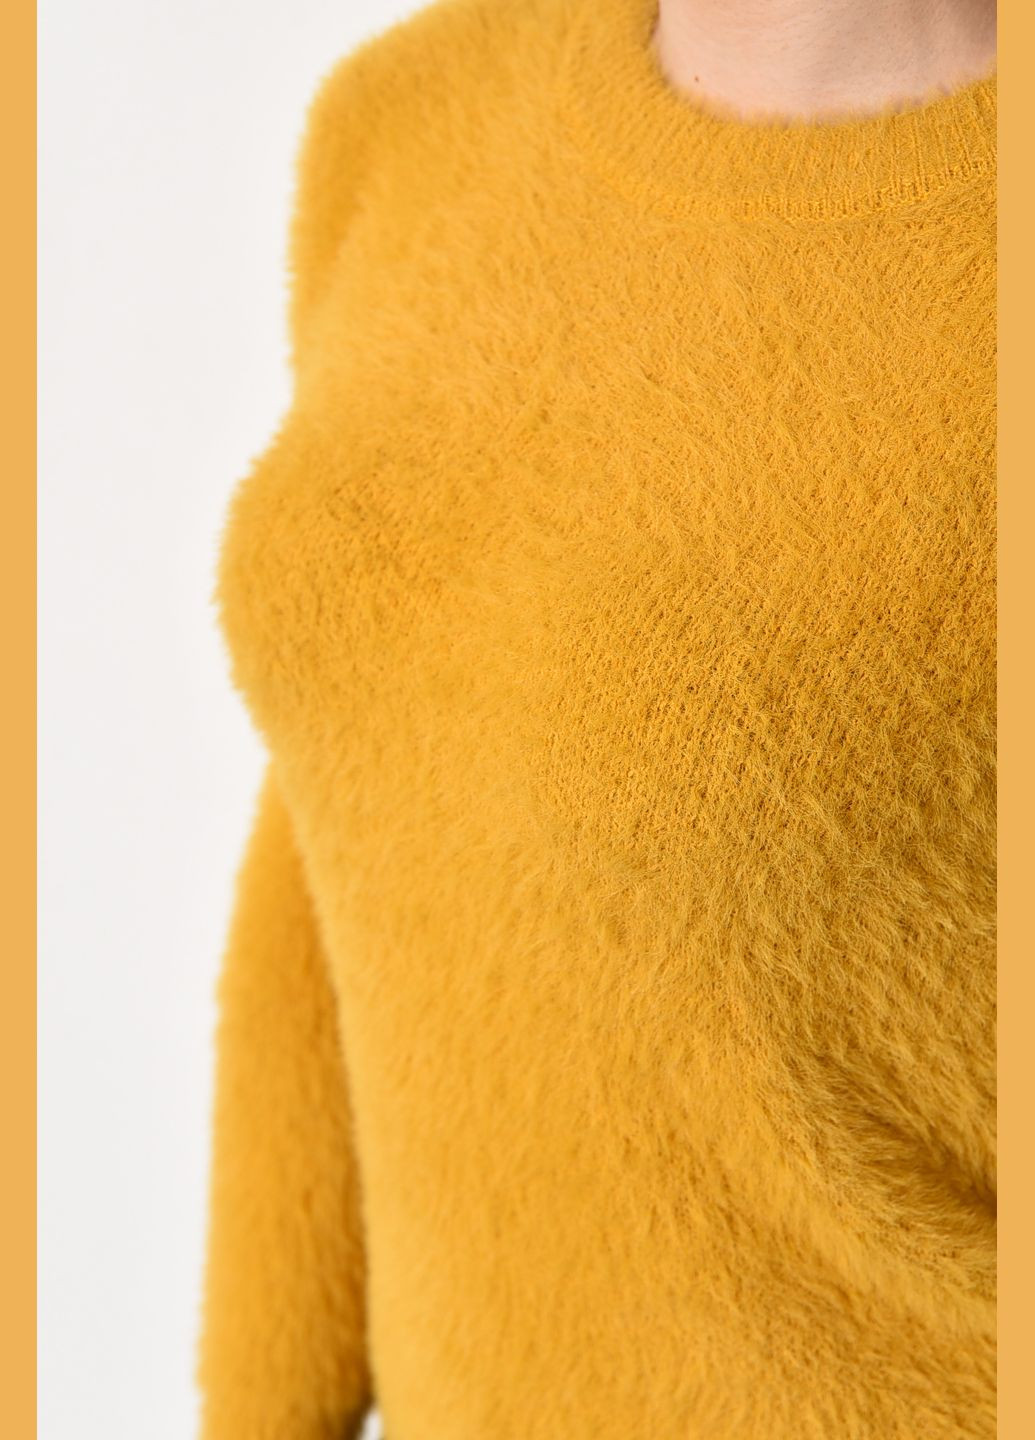 Горчичный зимний свитер женский из ангоры горчичного цвета пуловер Let's Shop